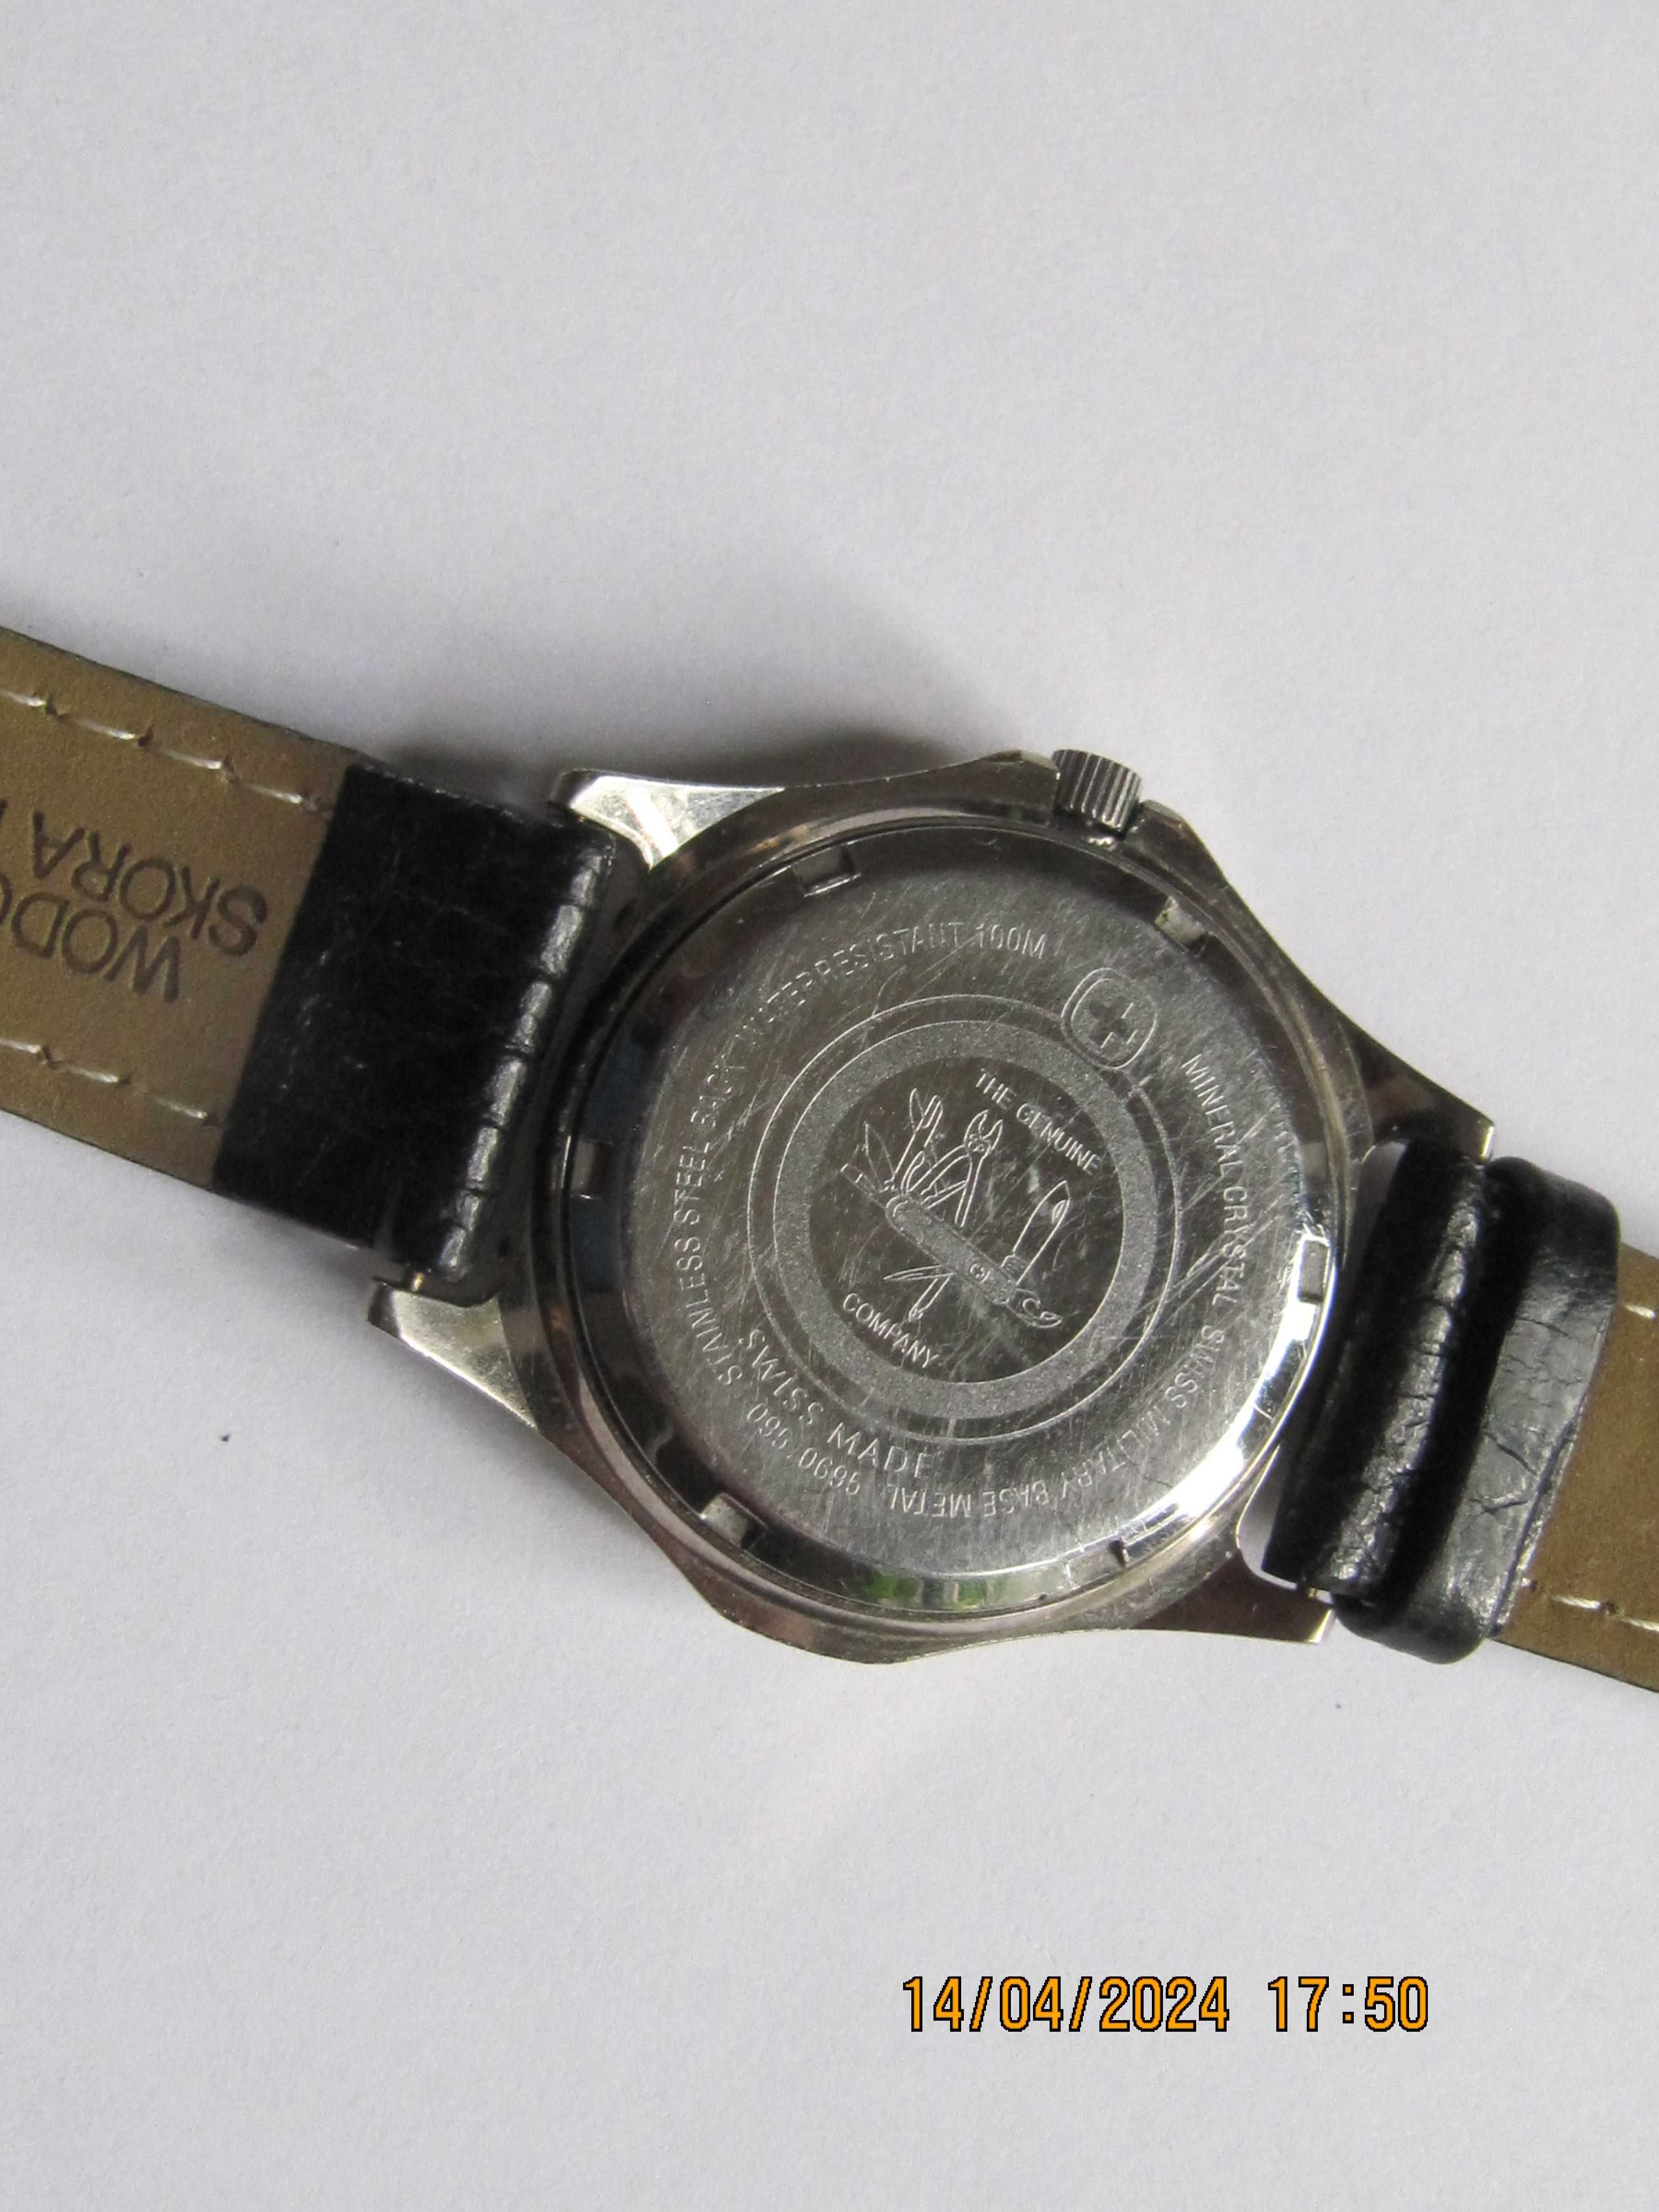 Wenger oryginalny sportowy zegarek